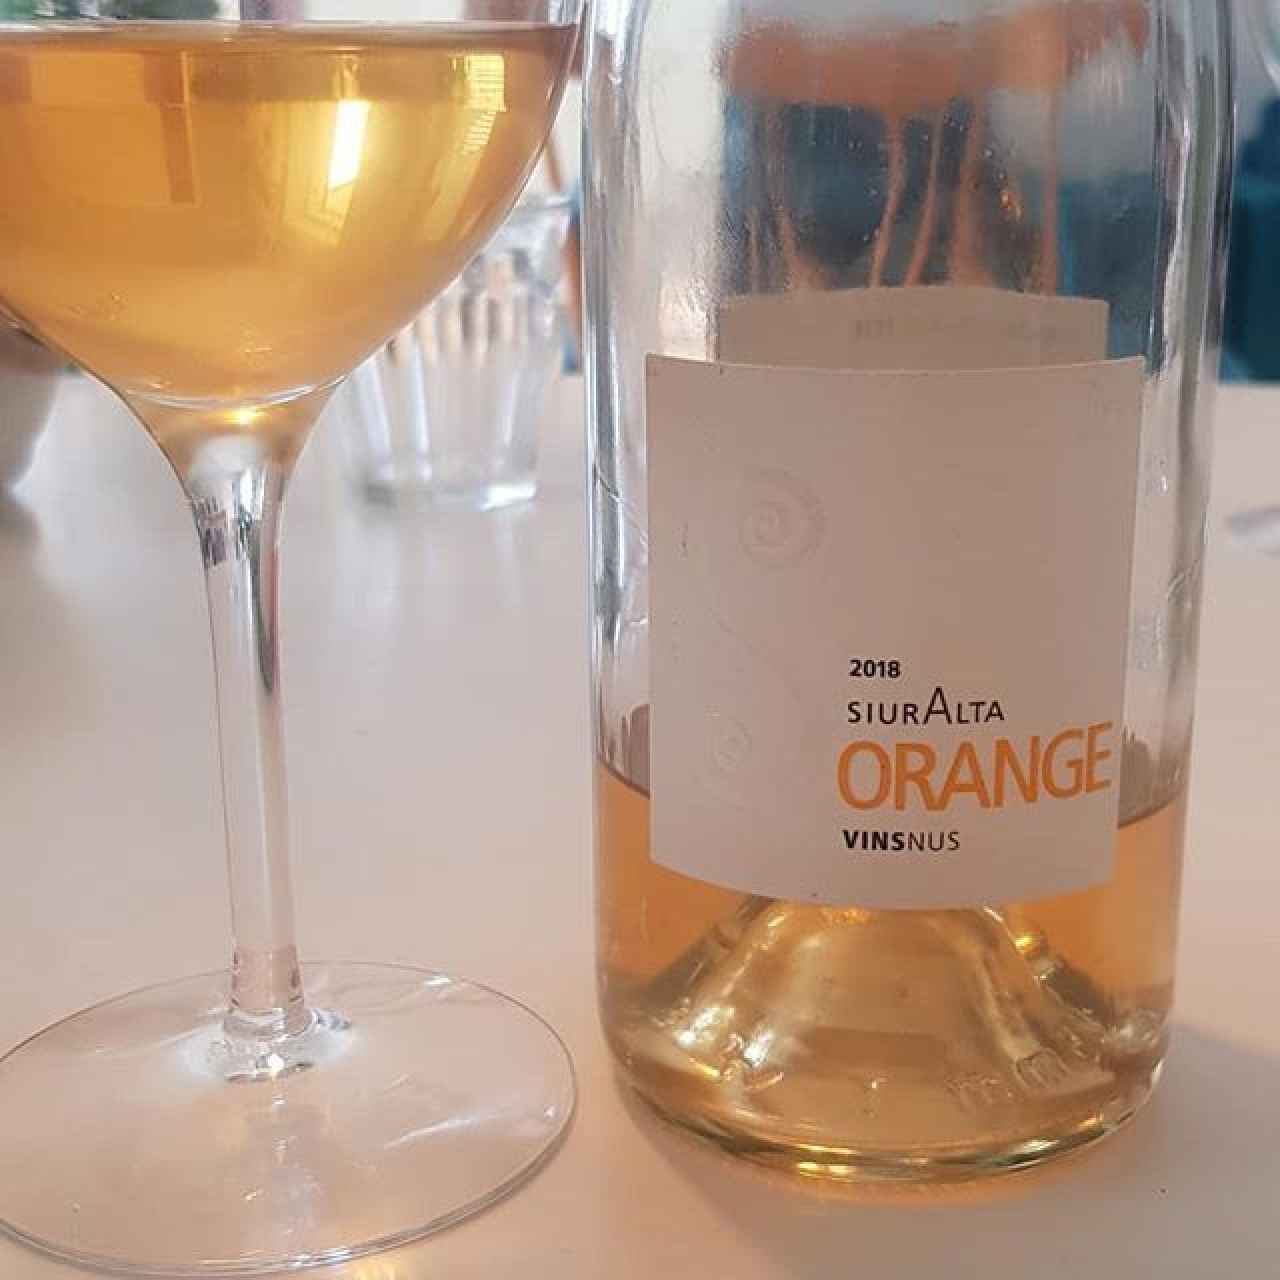 SiurAlta Orange, de Vins Nus.